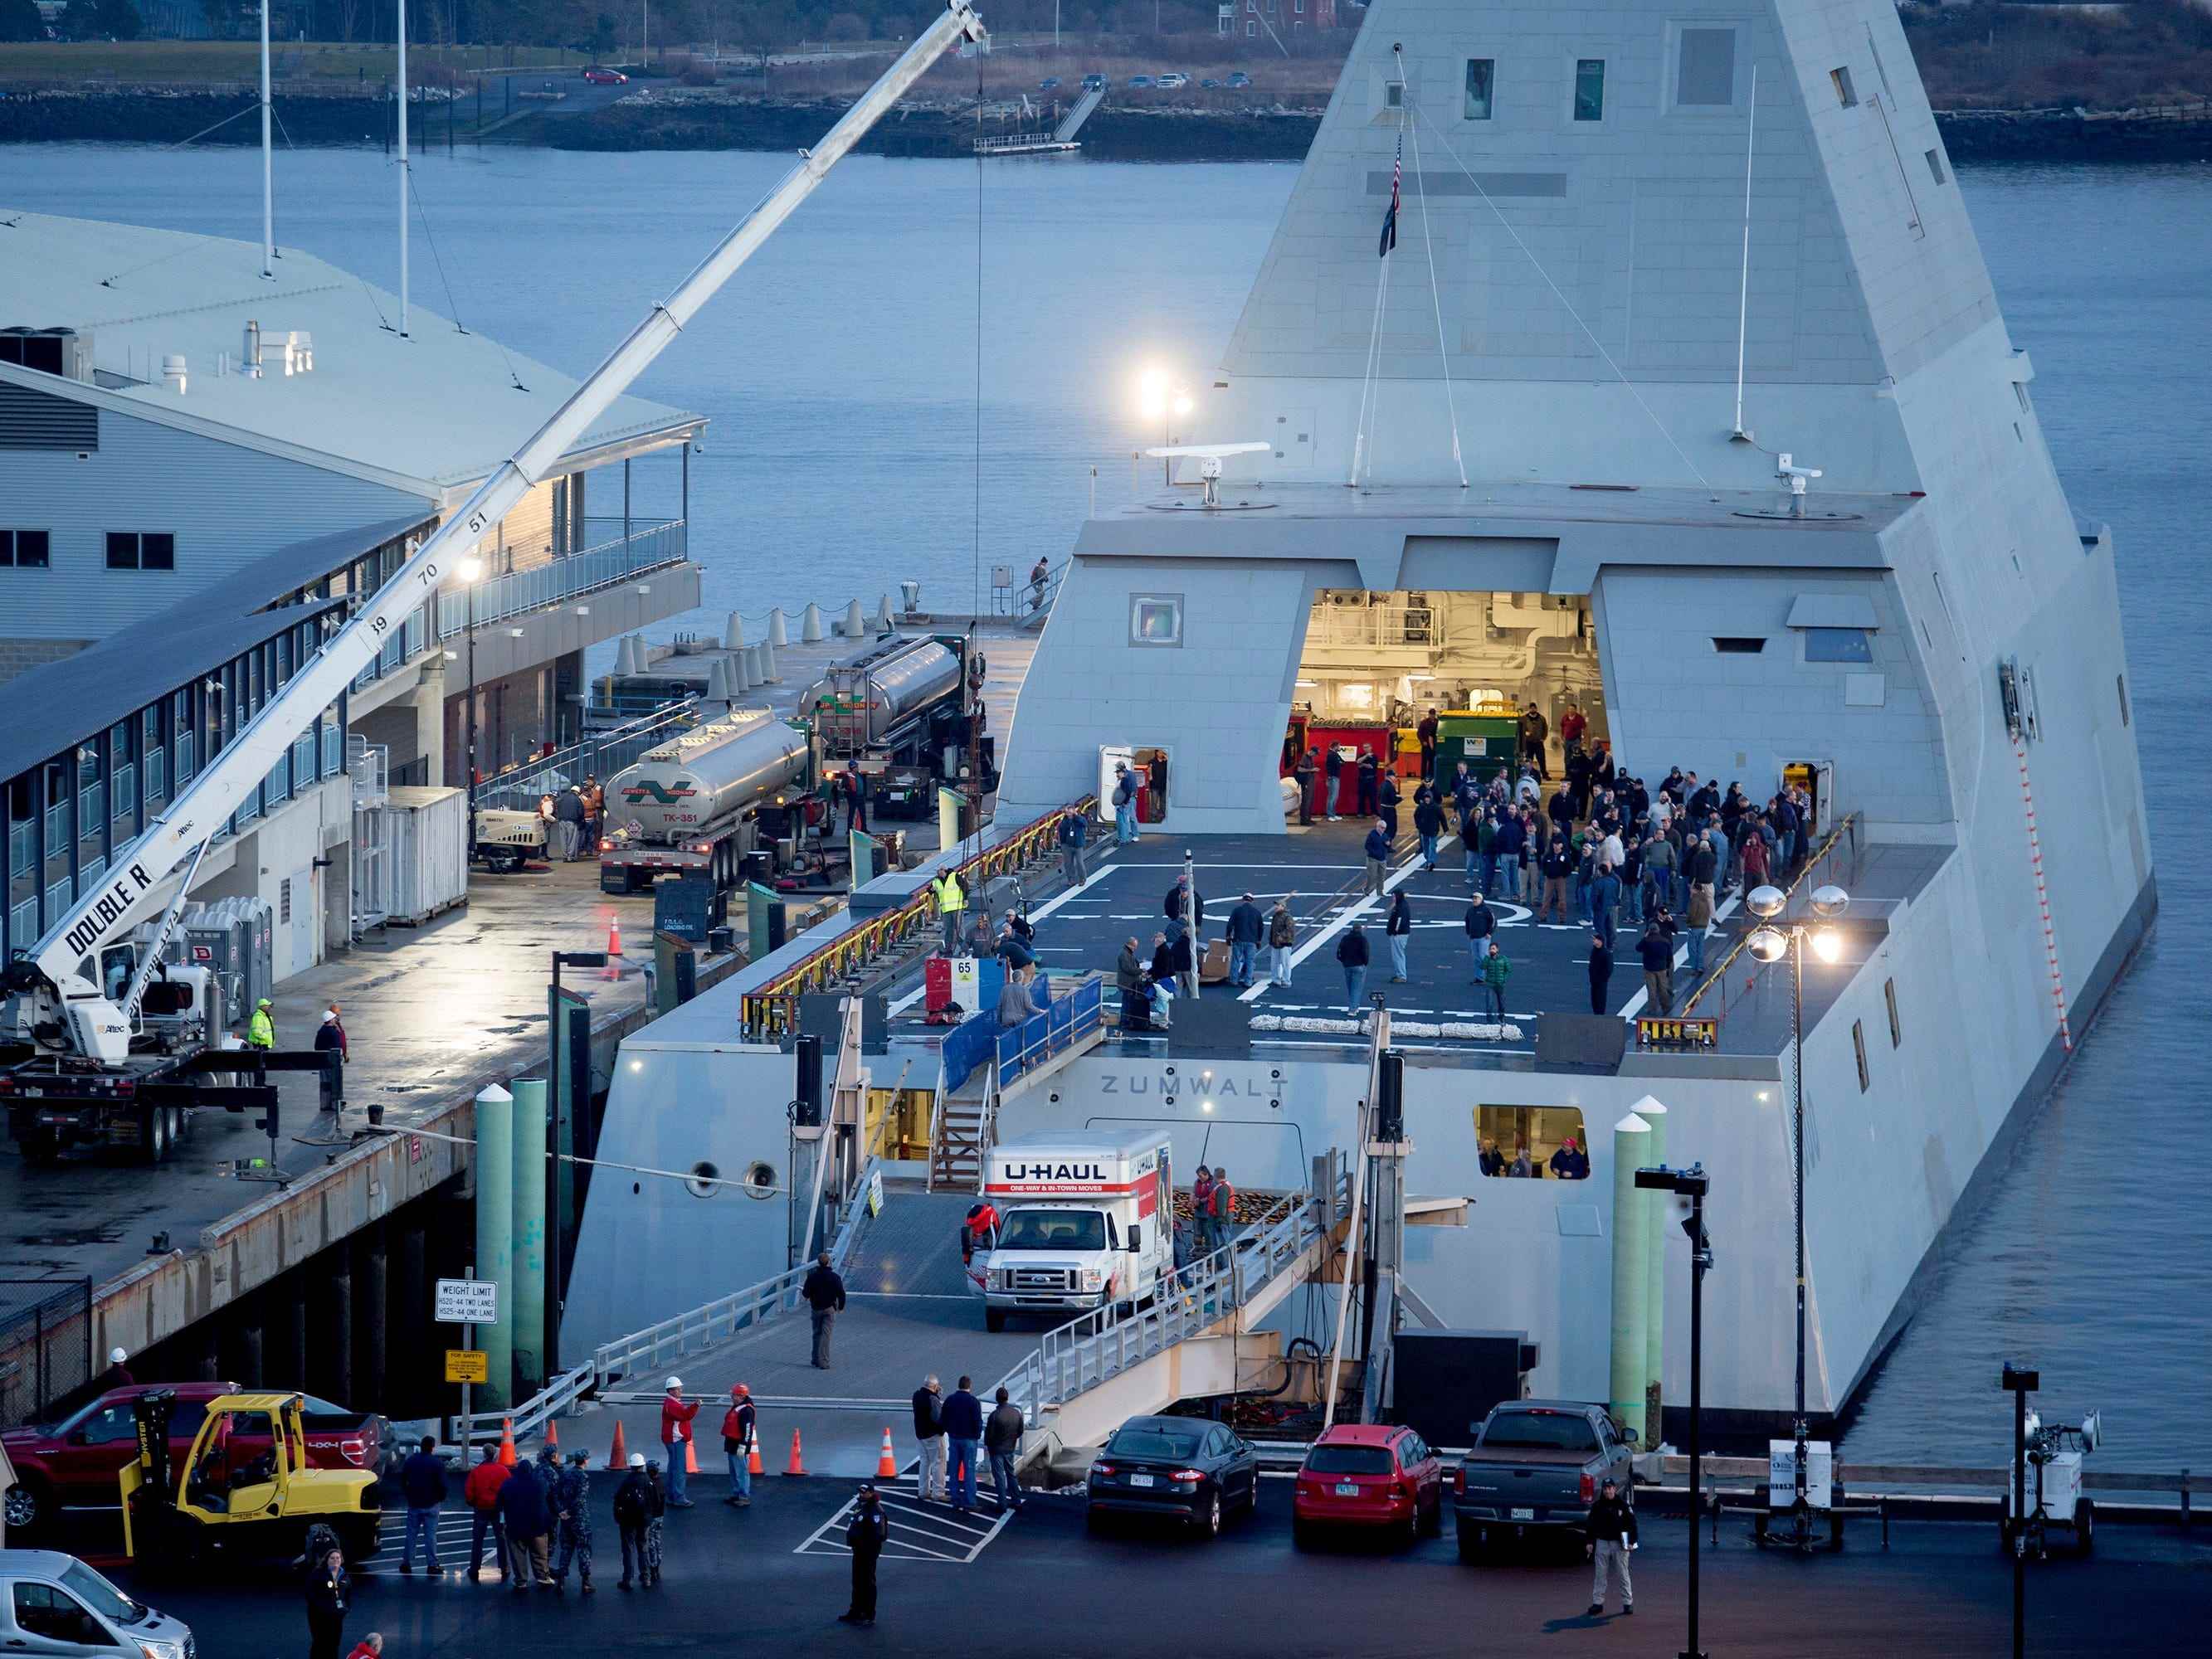 Die USS Zumwalt, ein Lenkwaffenzerstörer, ist mit Vorräten und anderen Notwendigkeiten beladen, während sie am Donnerstag, den 10. Dezember 2015, am Ocean Gateway Terminal in Portland angedockt ist.